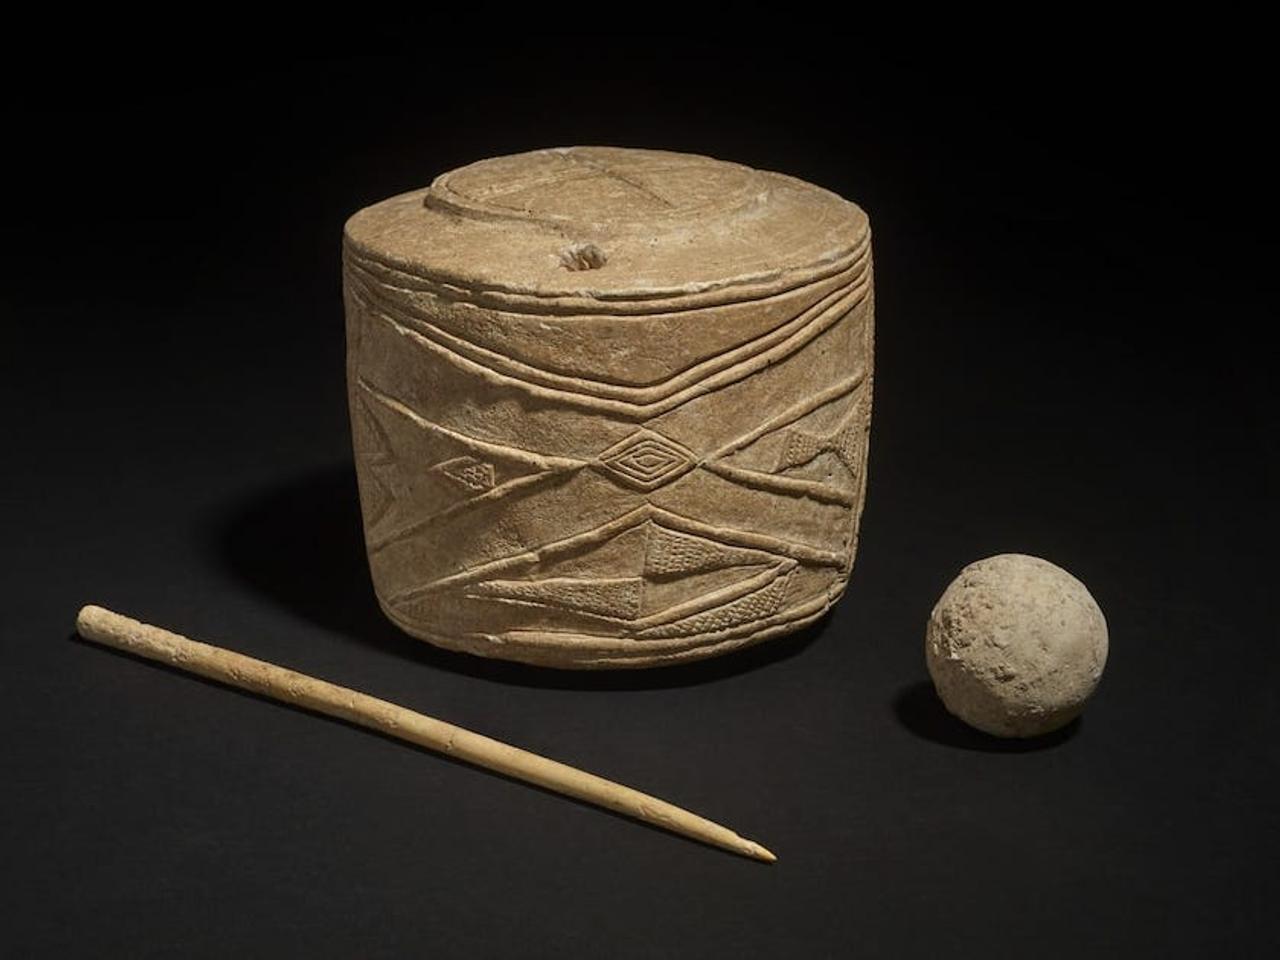 バートンアグネスから出土した石灰岩でできた太鼓と球体、骨でできたかんざし。